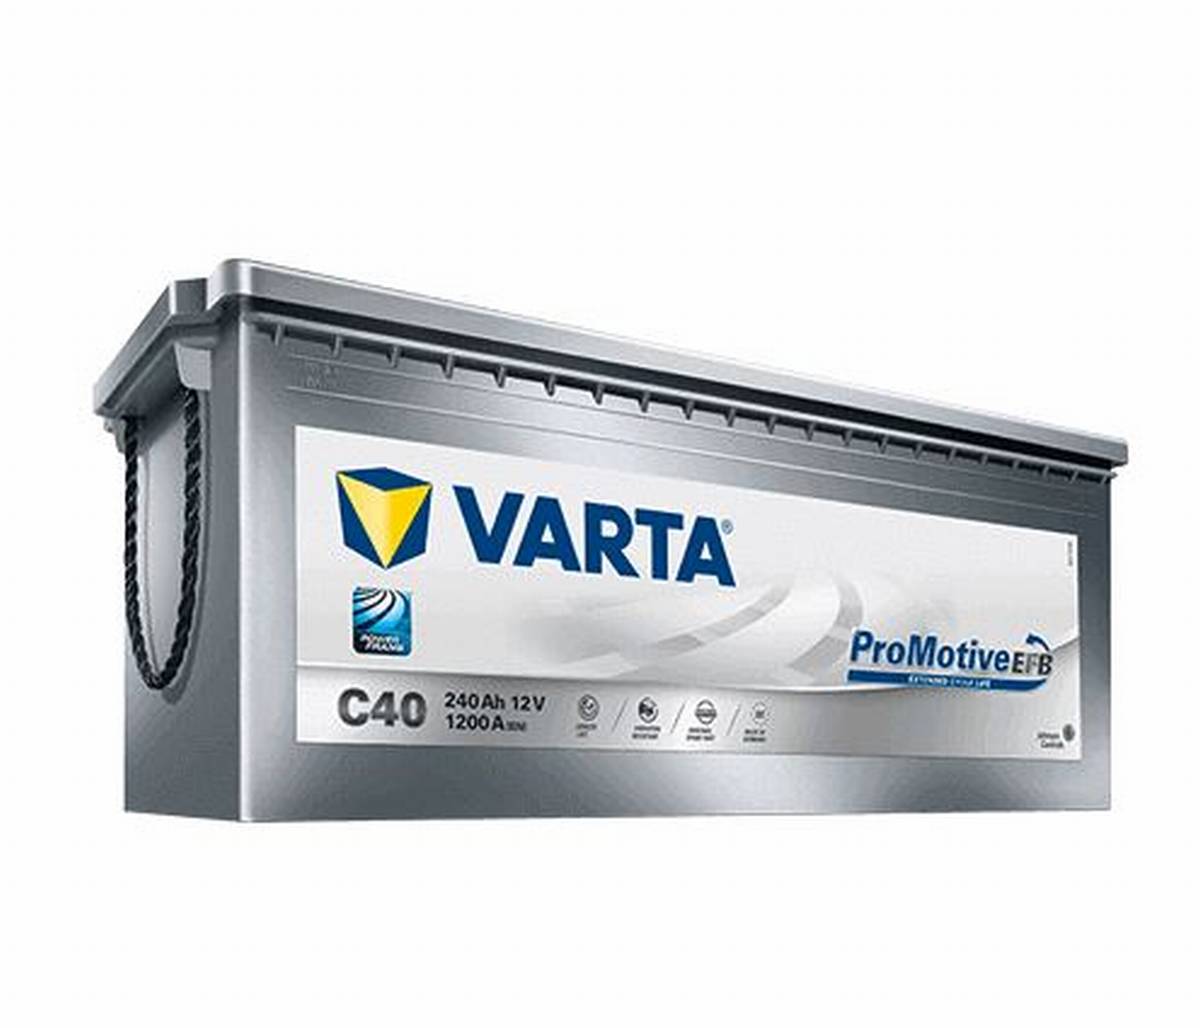 VARTA C40 ProMotive EFB 12V 240Ah 1200A batteria per camion 740 500 120